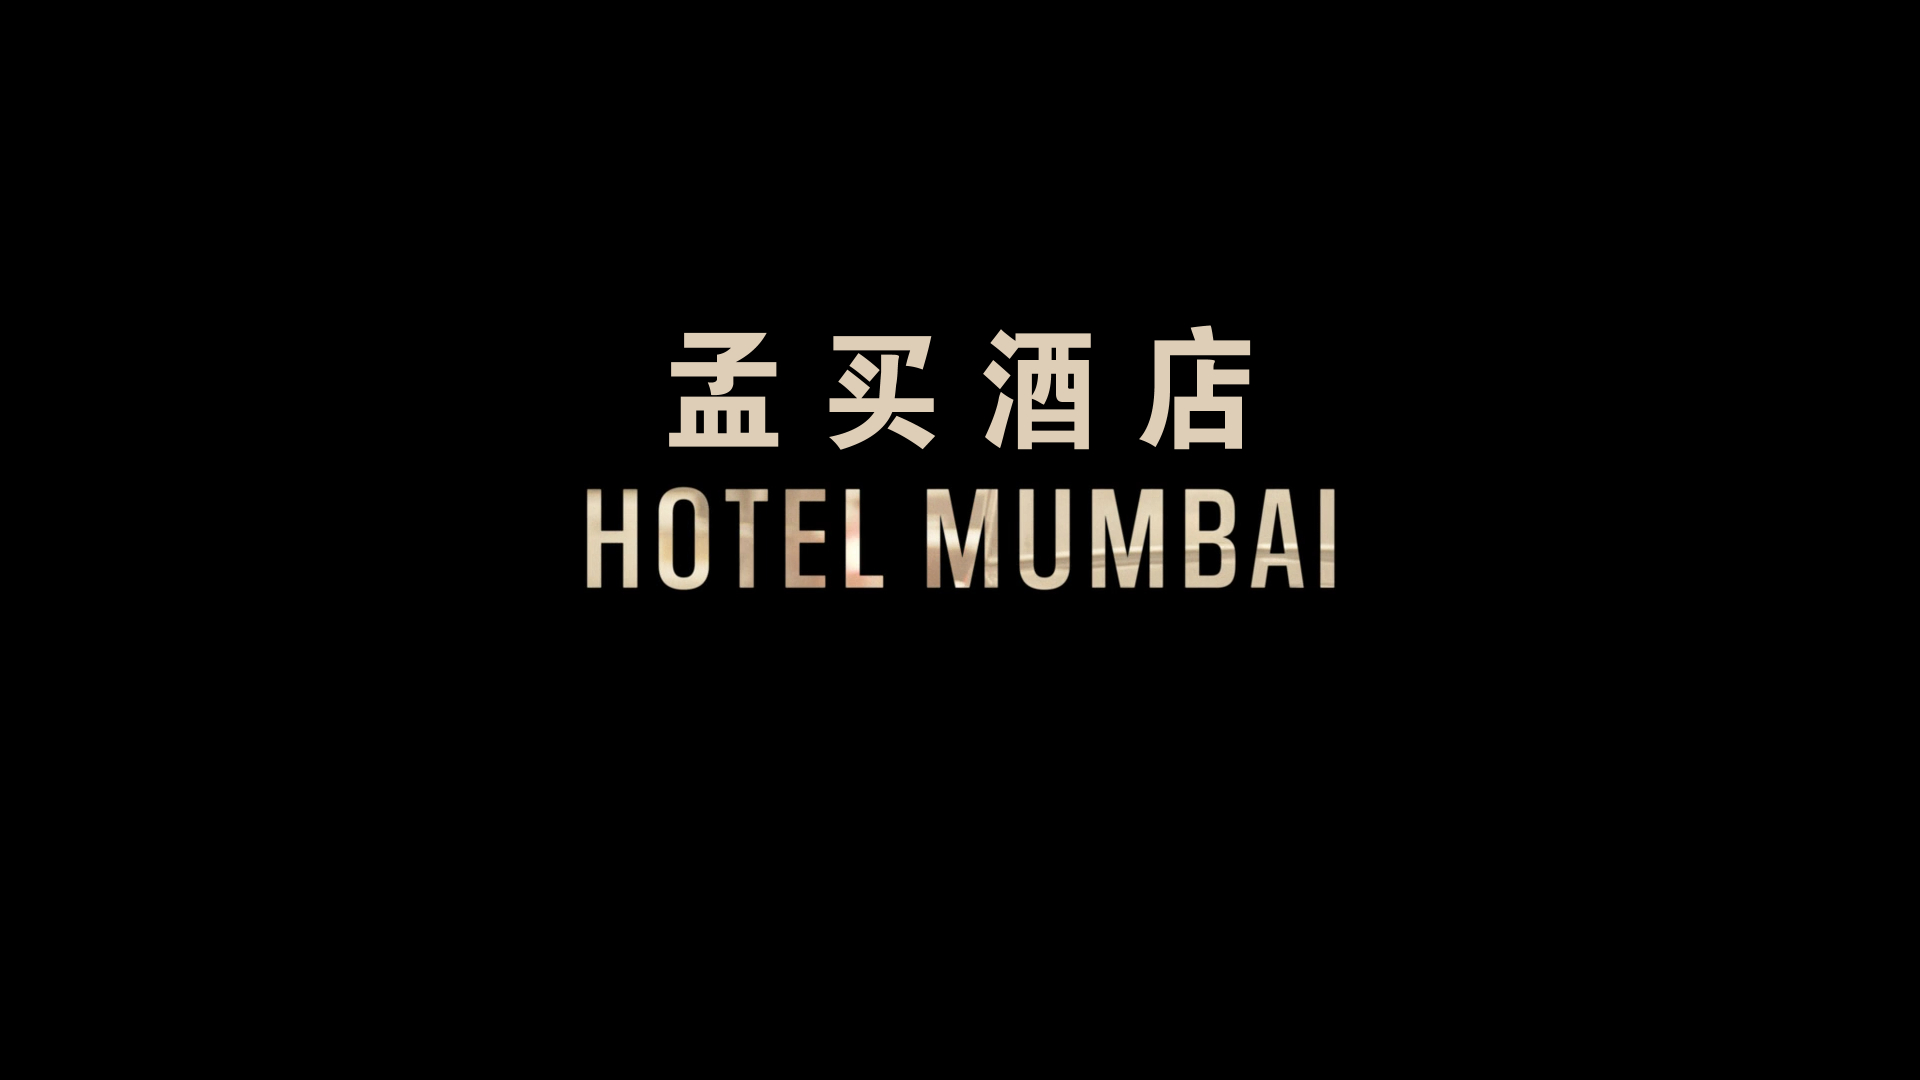 孟买酒店 / 失控危城(台) *修复版* 【DIY简繁+简繁英双语特效字幕】 Hotel Mumbai 2018 1080p REPACK Blu-ray AVC DTS-HD MA5.1-lingfriendly@OurBits    [37.49 GB ]-2.jpg